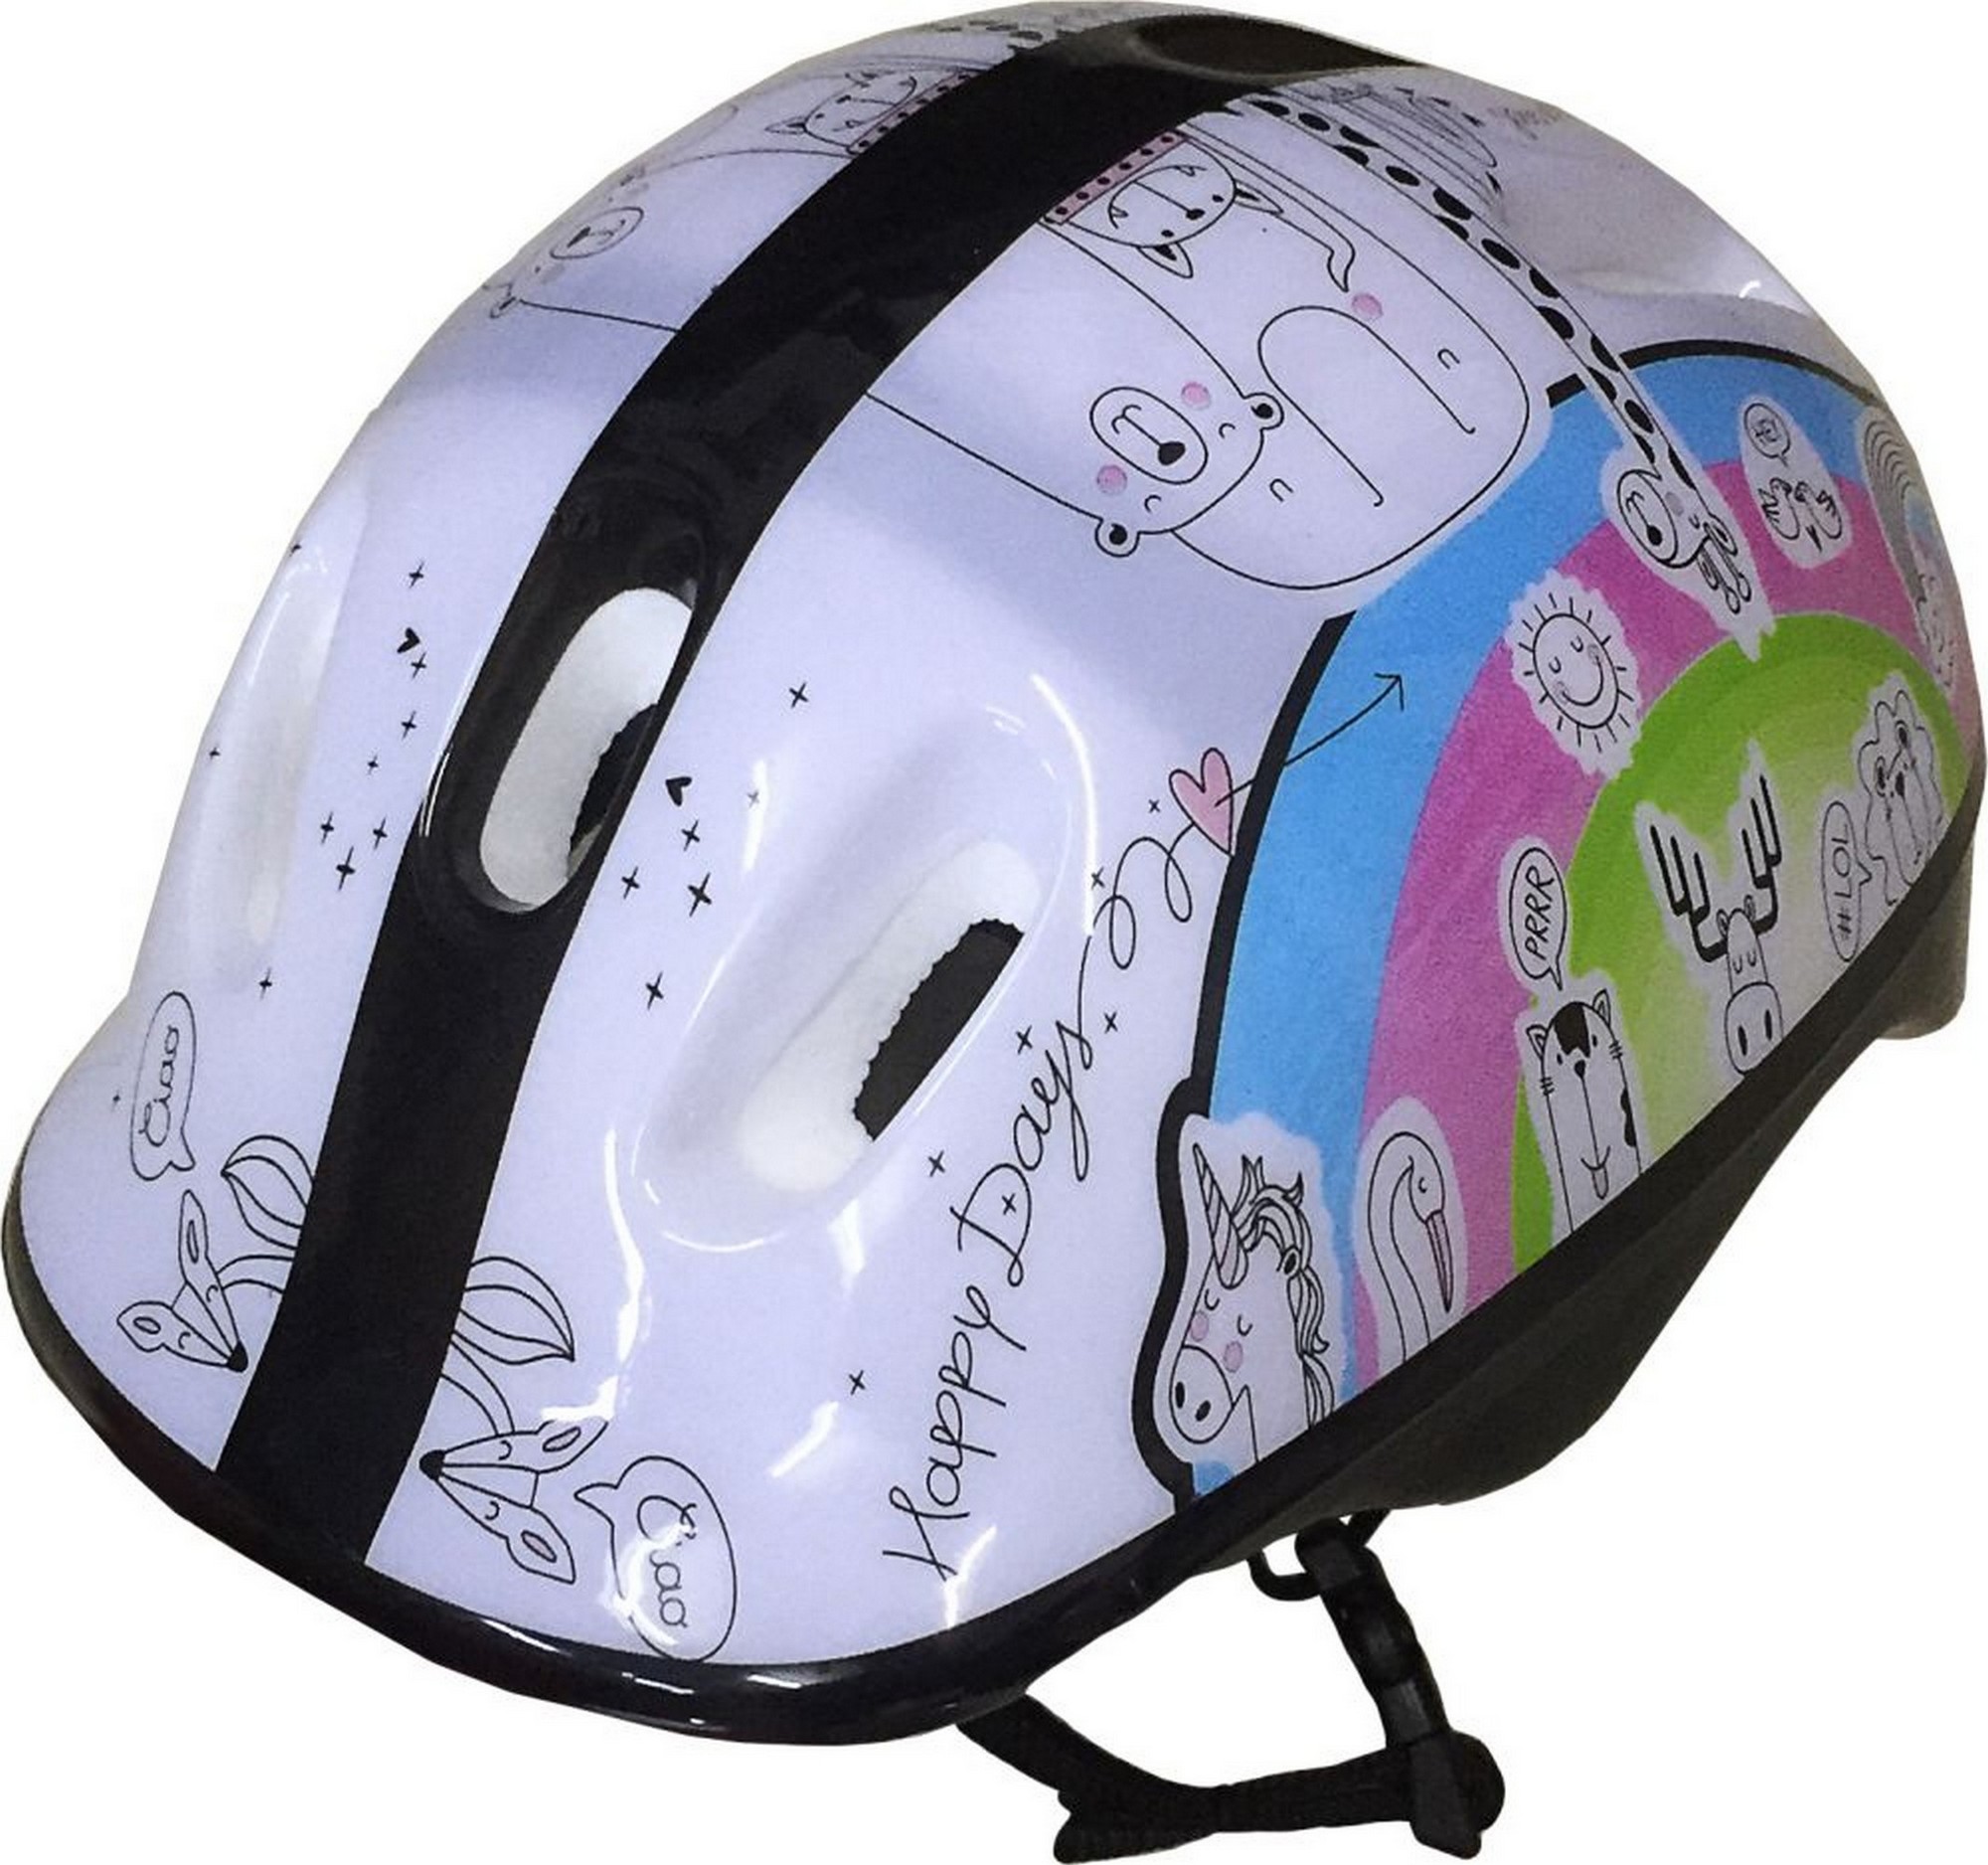 Шлем защитный подростковый Atemi размер окруж (52-54 см), М (6-12 лет) AKH06GM аквапринт Зверушки